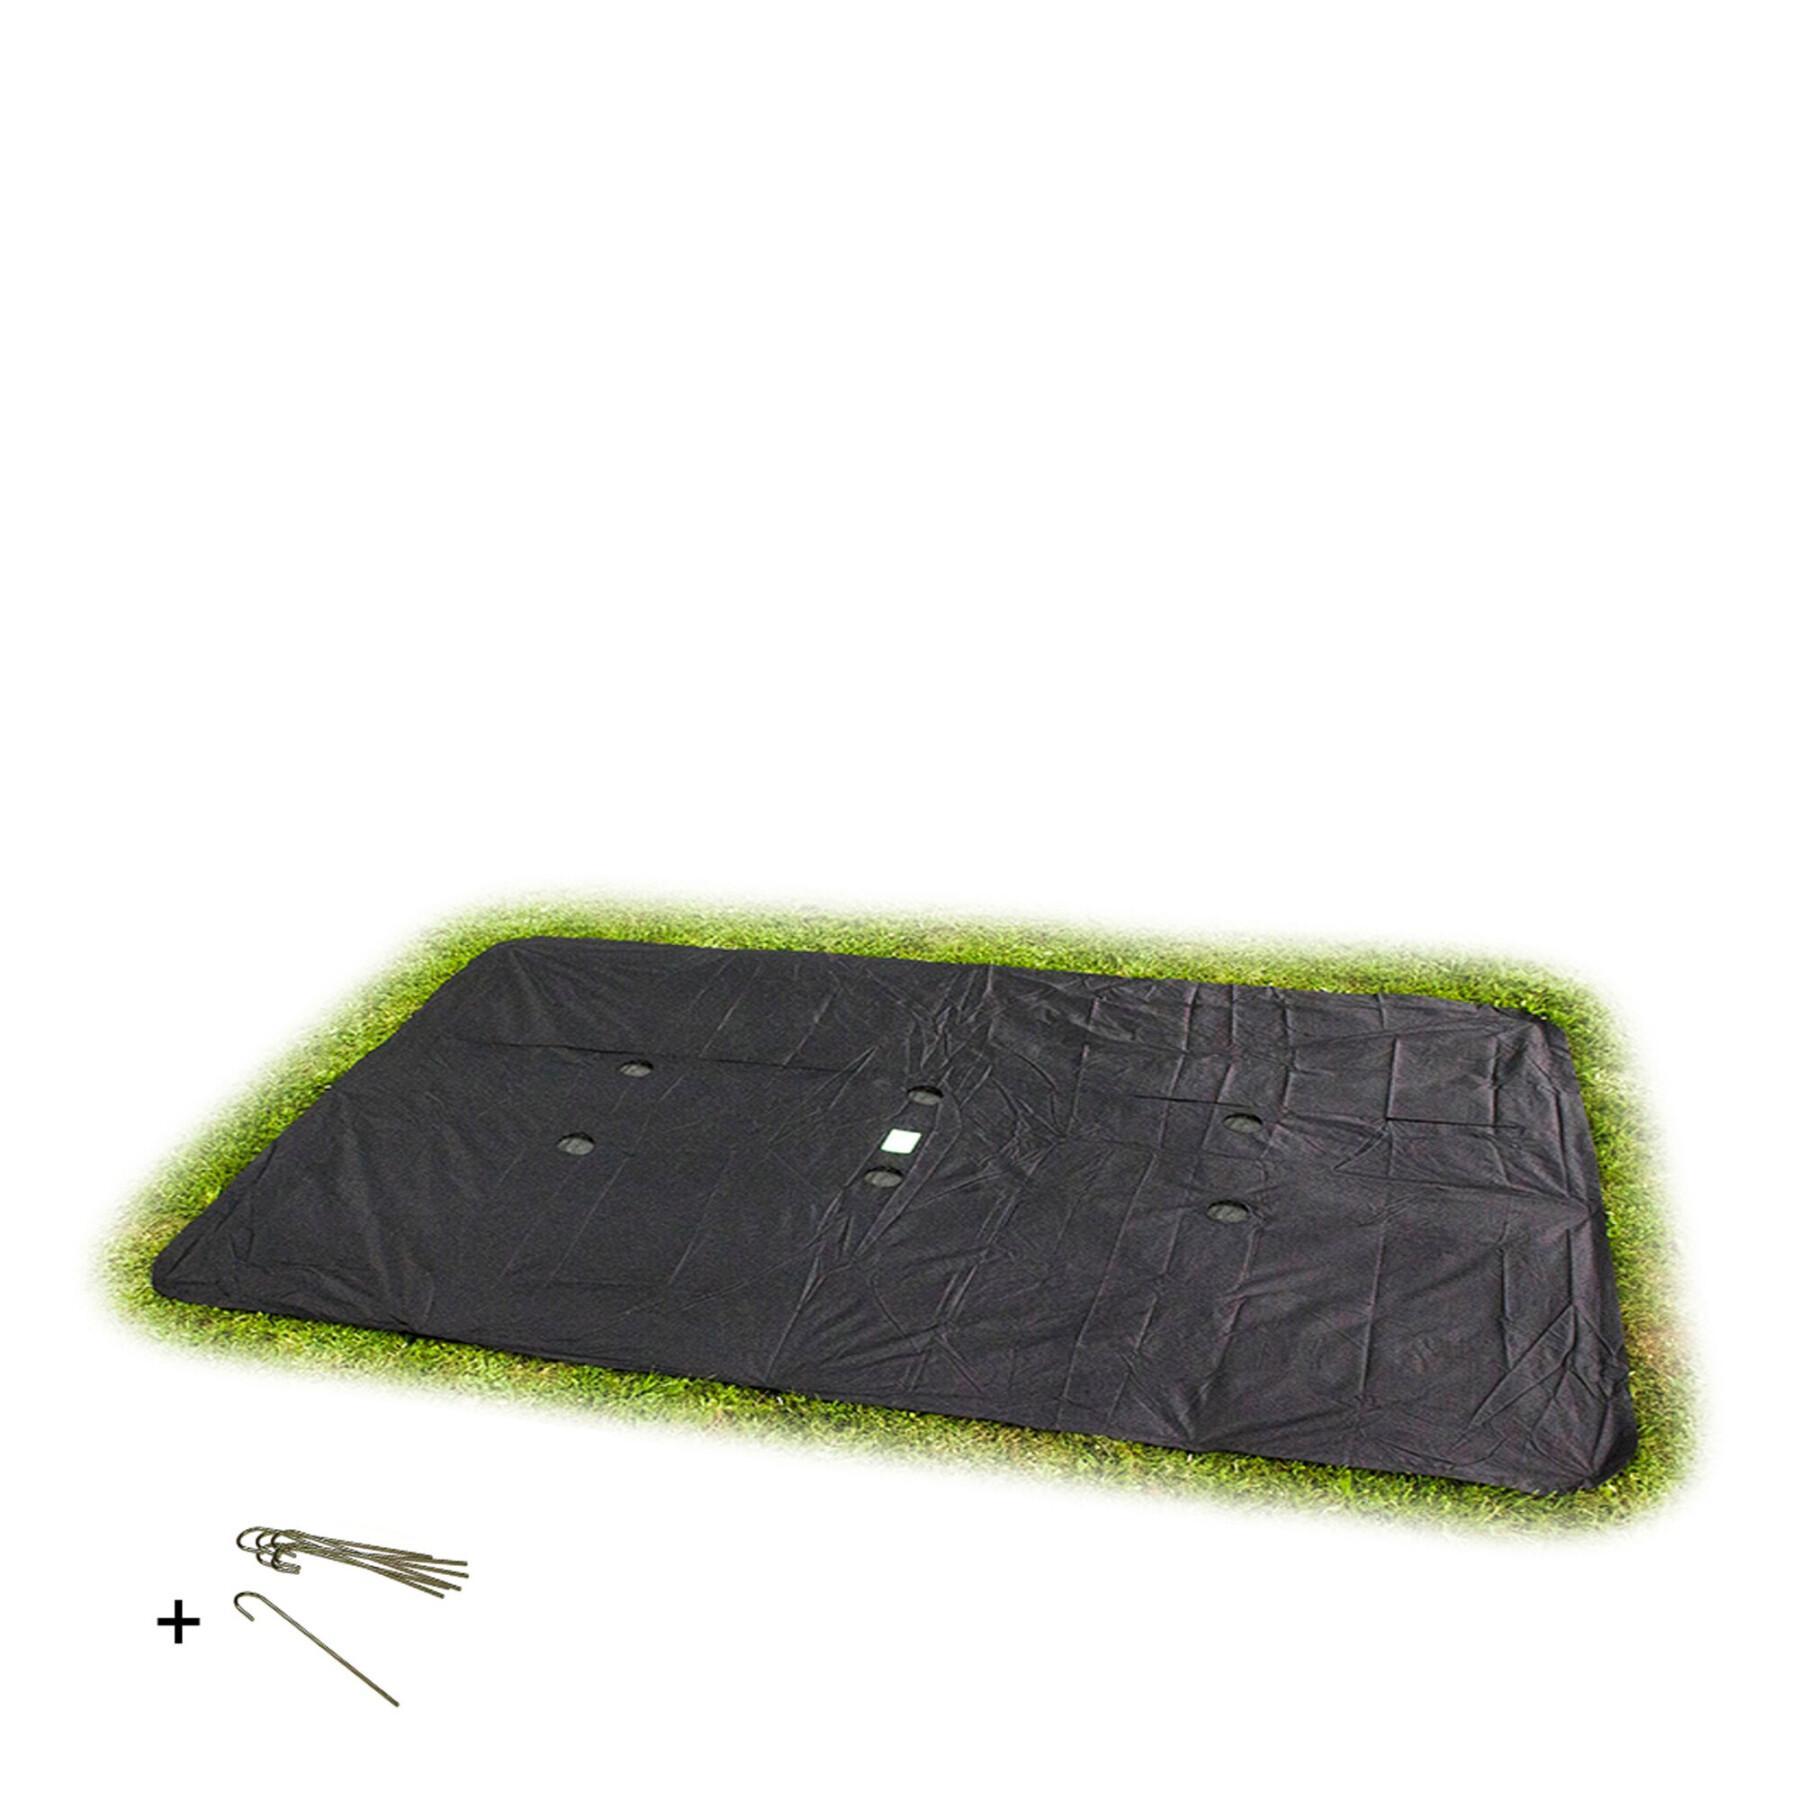 Cubierta protectora rectangular para la cama elástica en el suelo Exit Toys 275 x 458 cm